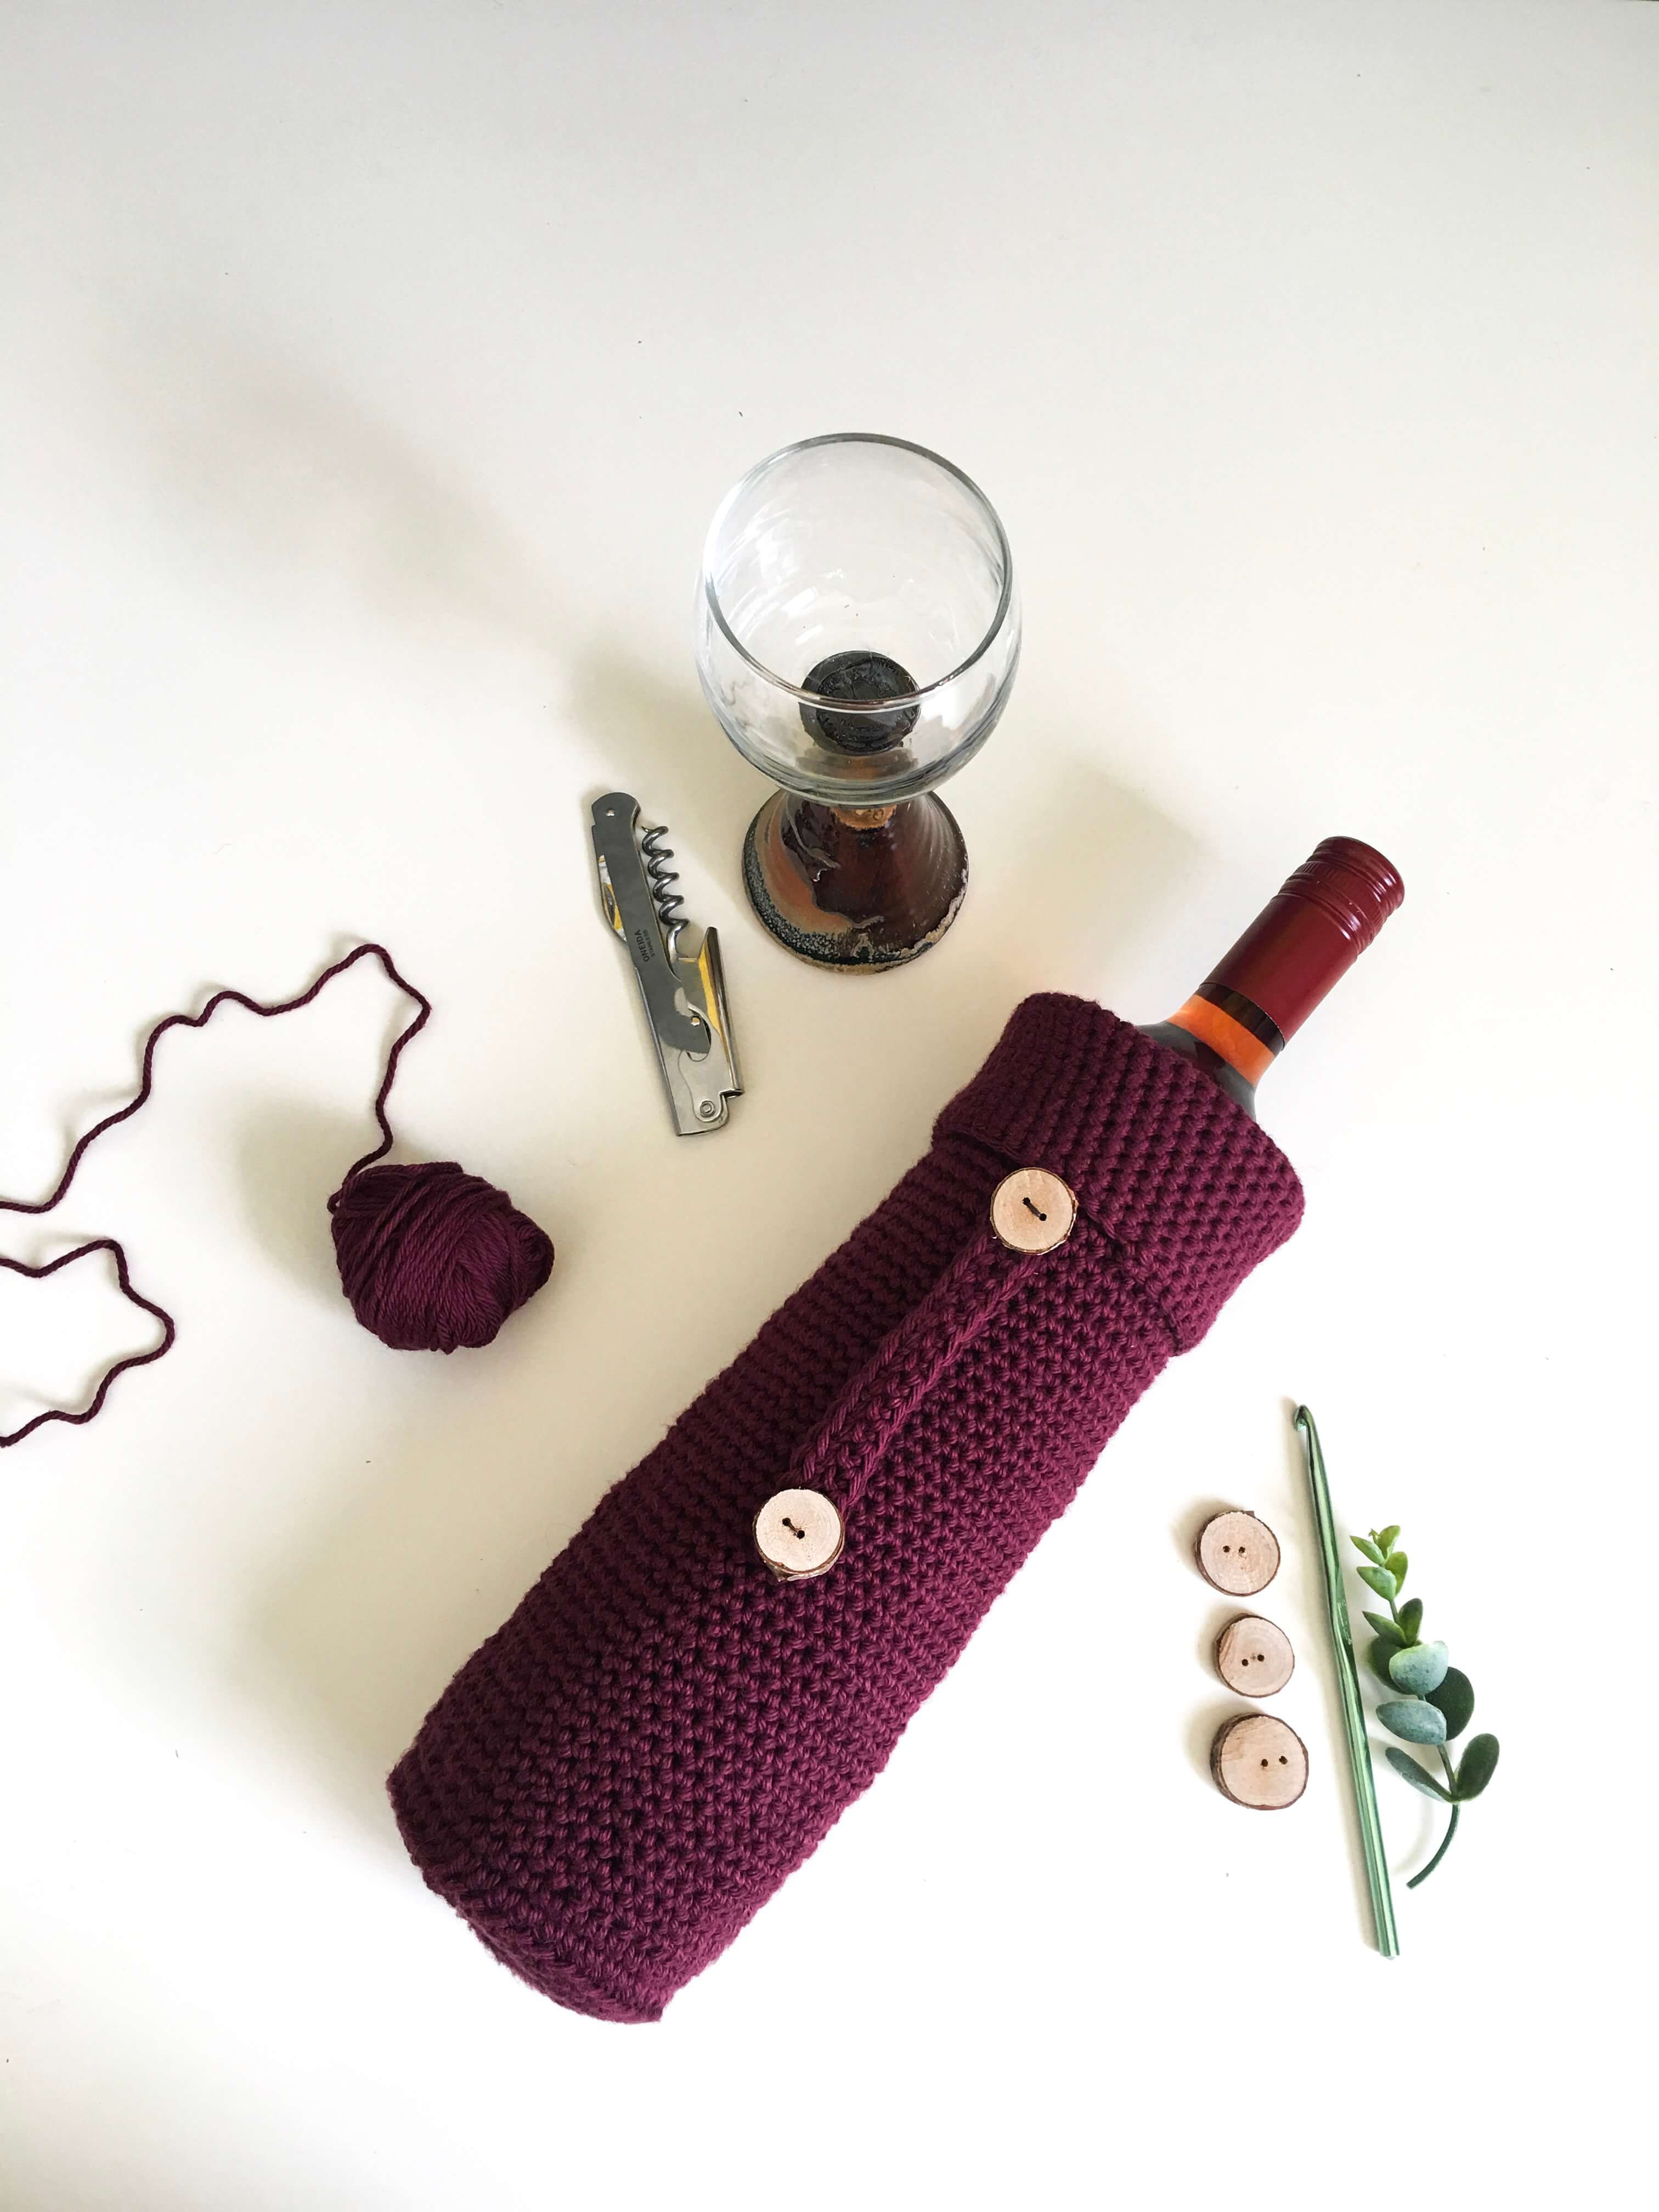 Crochet Bottle Holder Pattern How To Make A Crochet Wine Bottle Cover The Best Hostess Gift